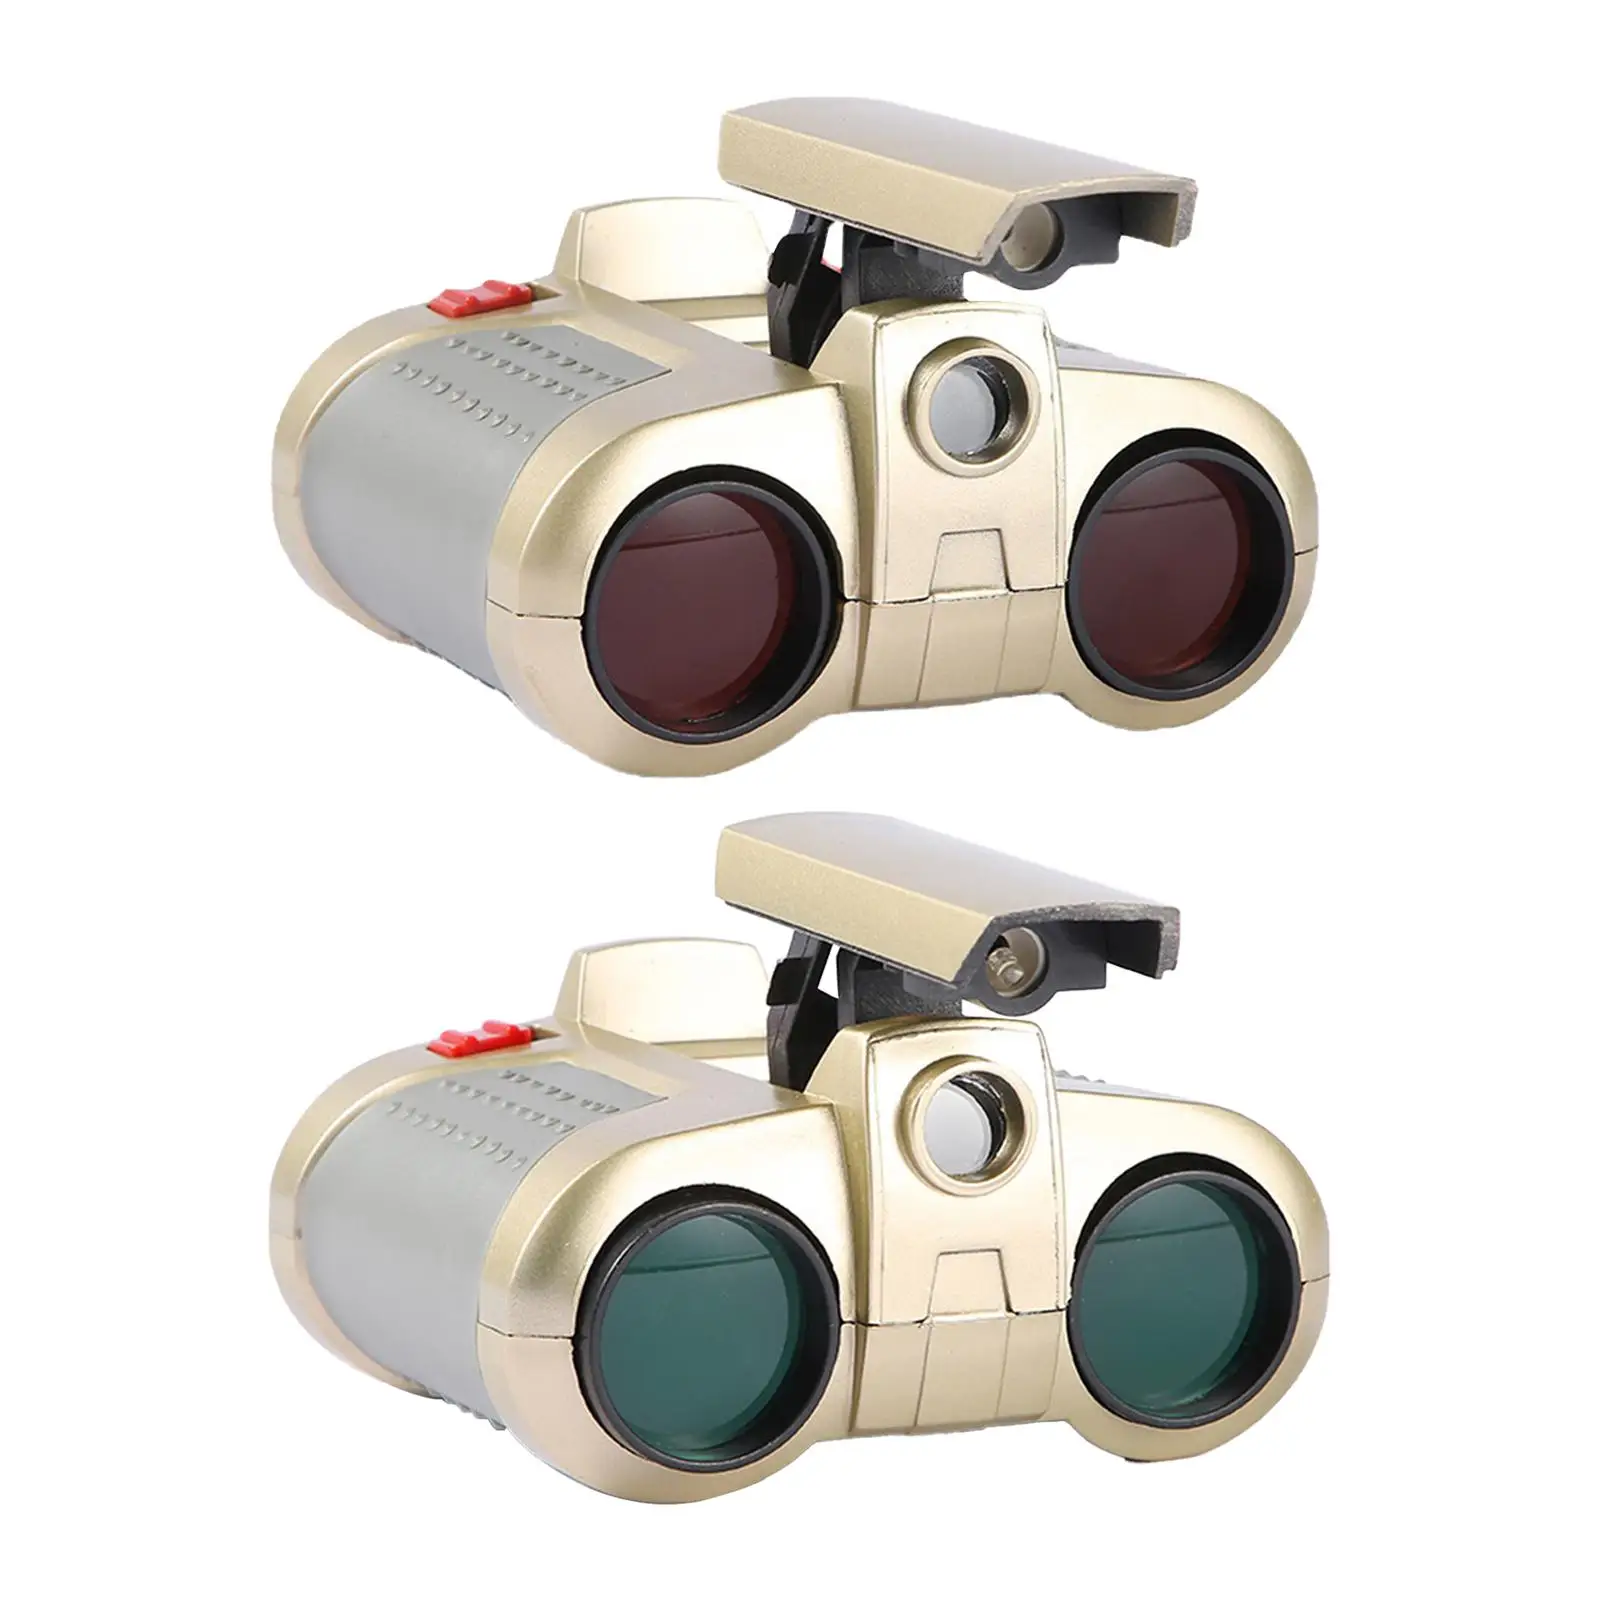 

Children's Binoculars Interactive Toy Learning Activities Telescope Toy